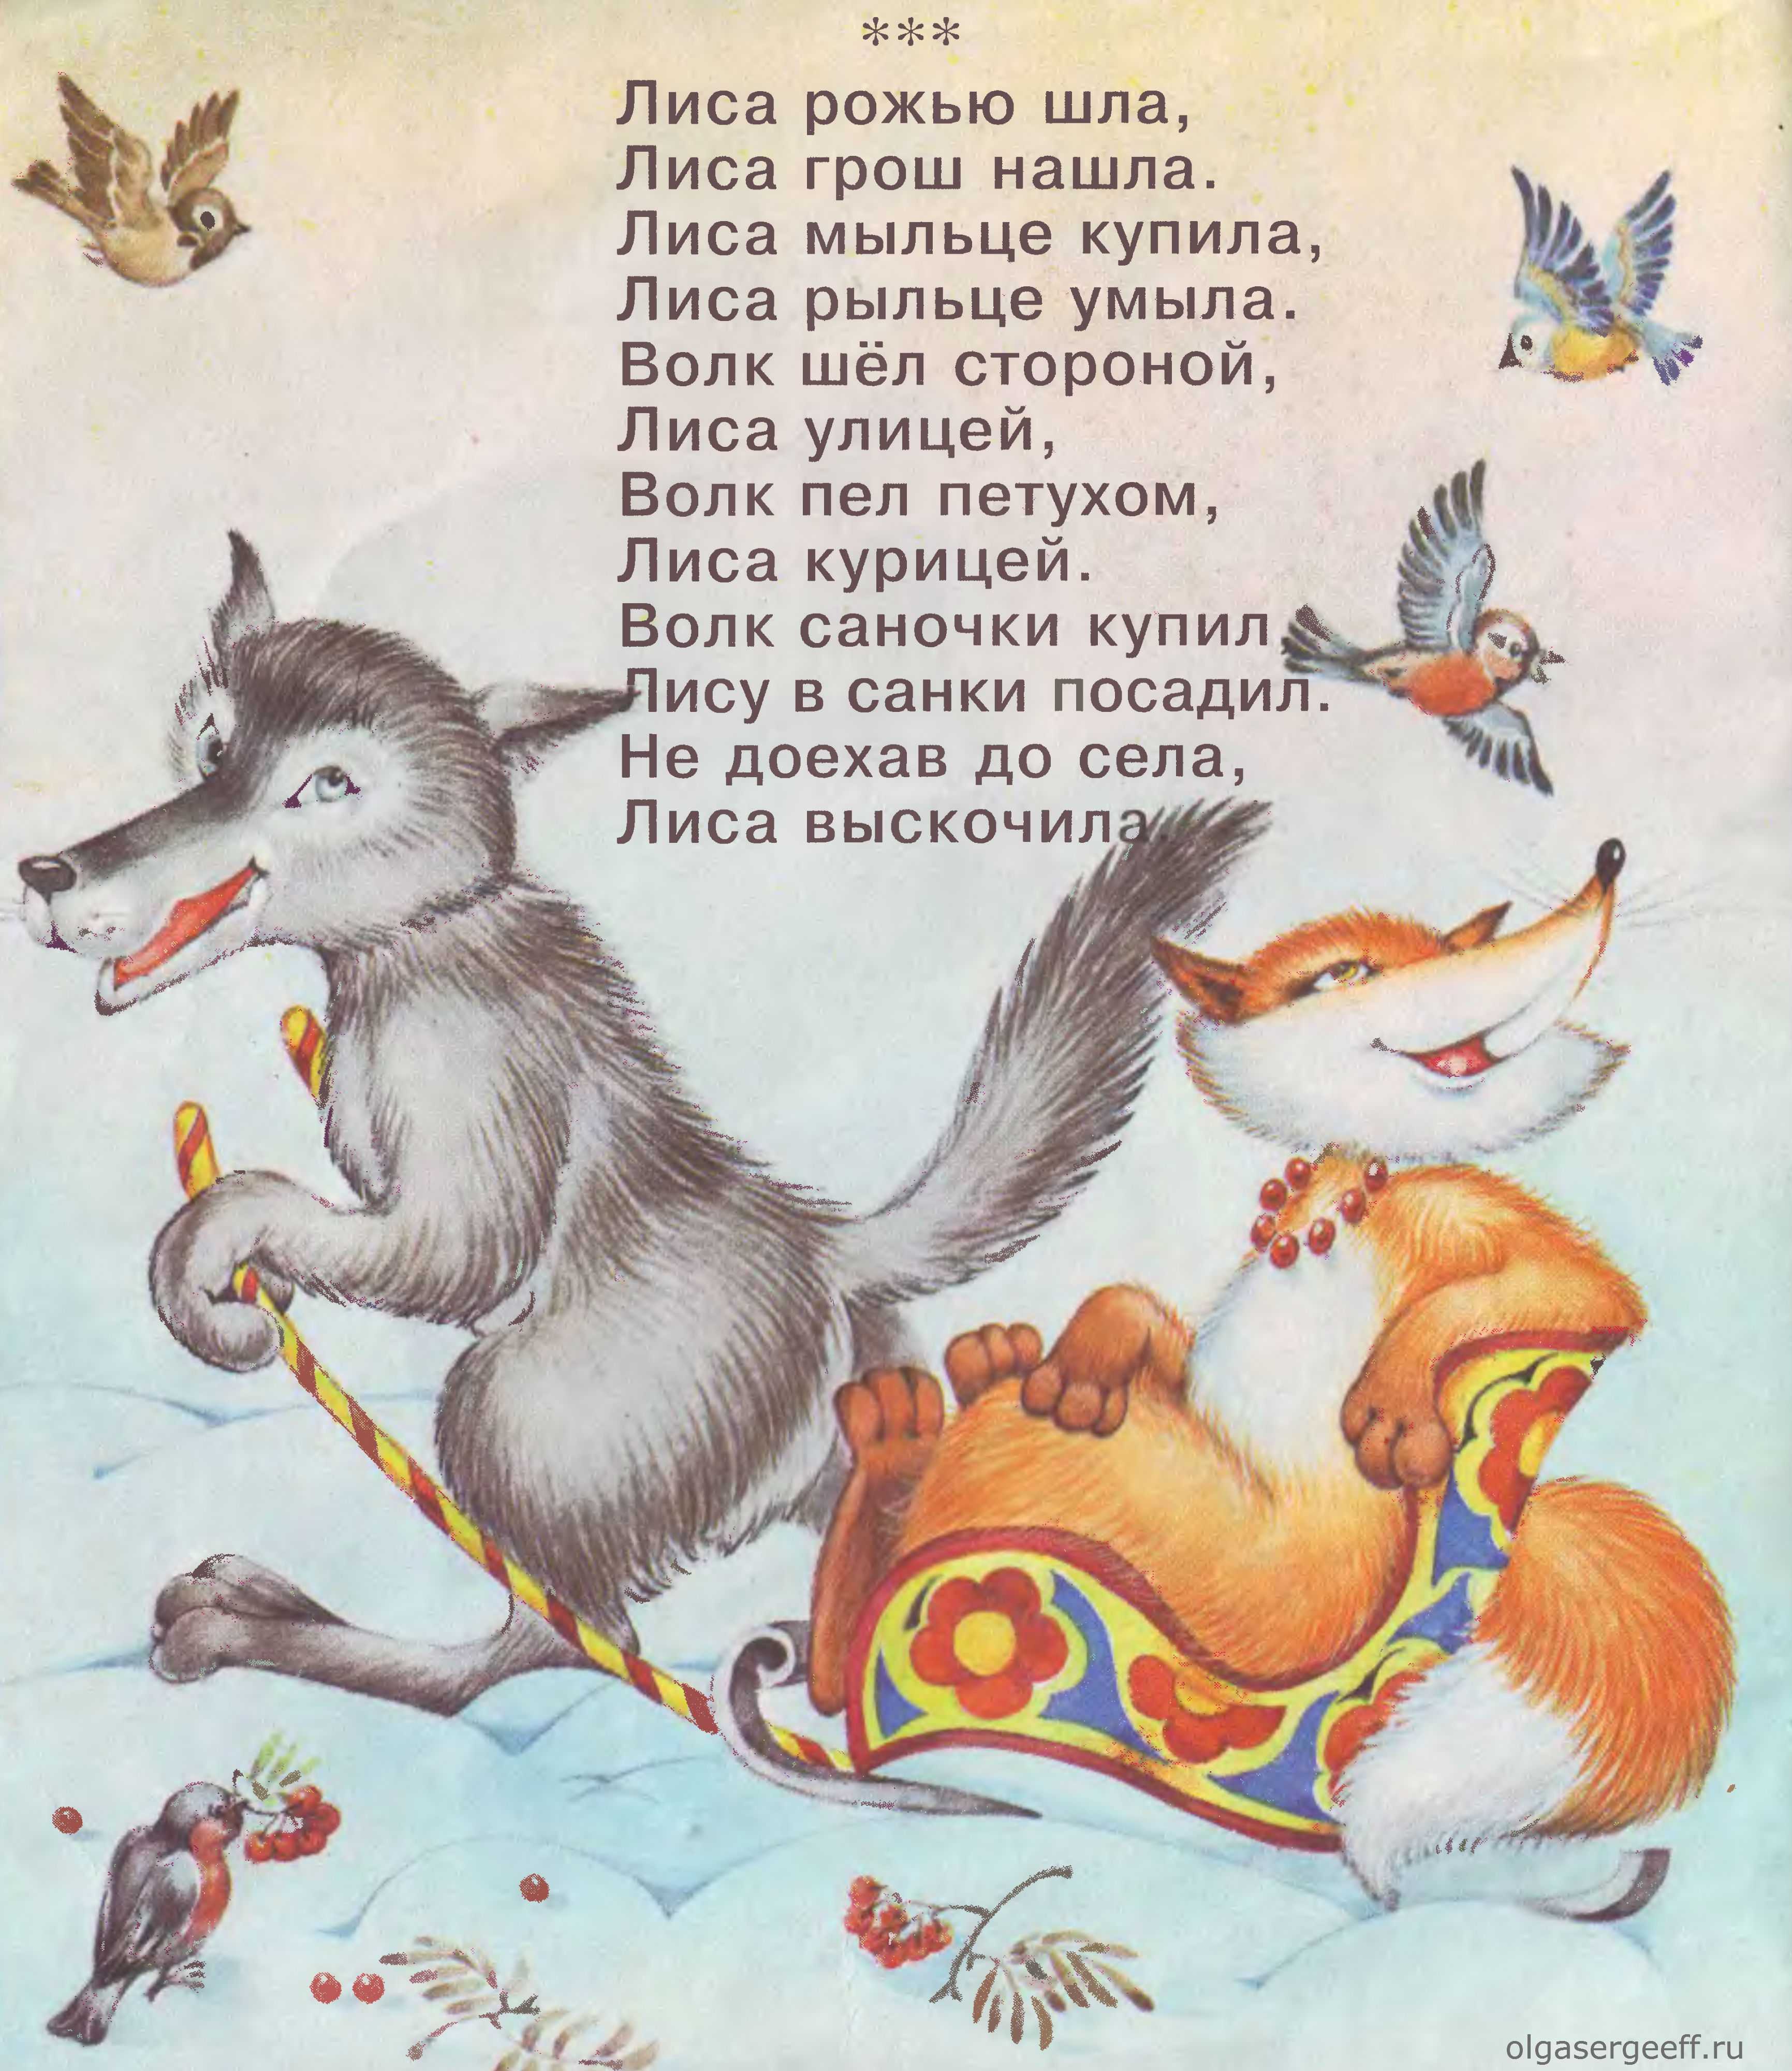 Потешки - русские народные песни для детей, песни из сказок.